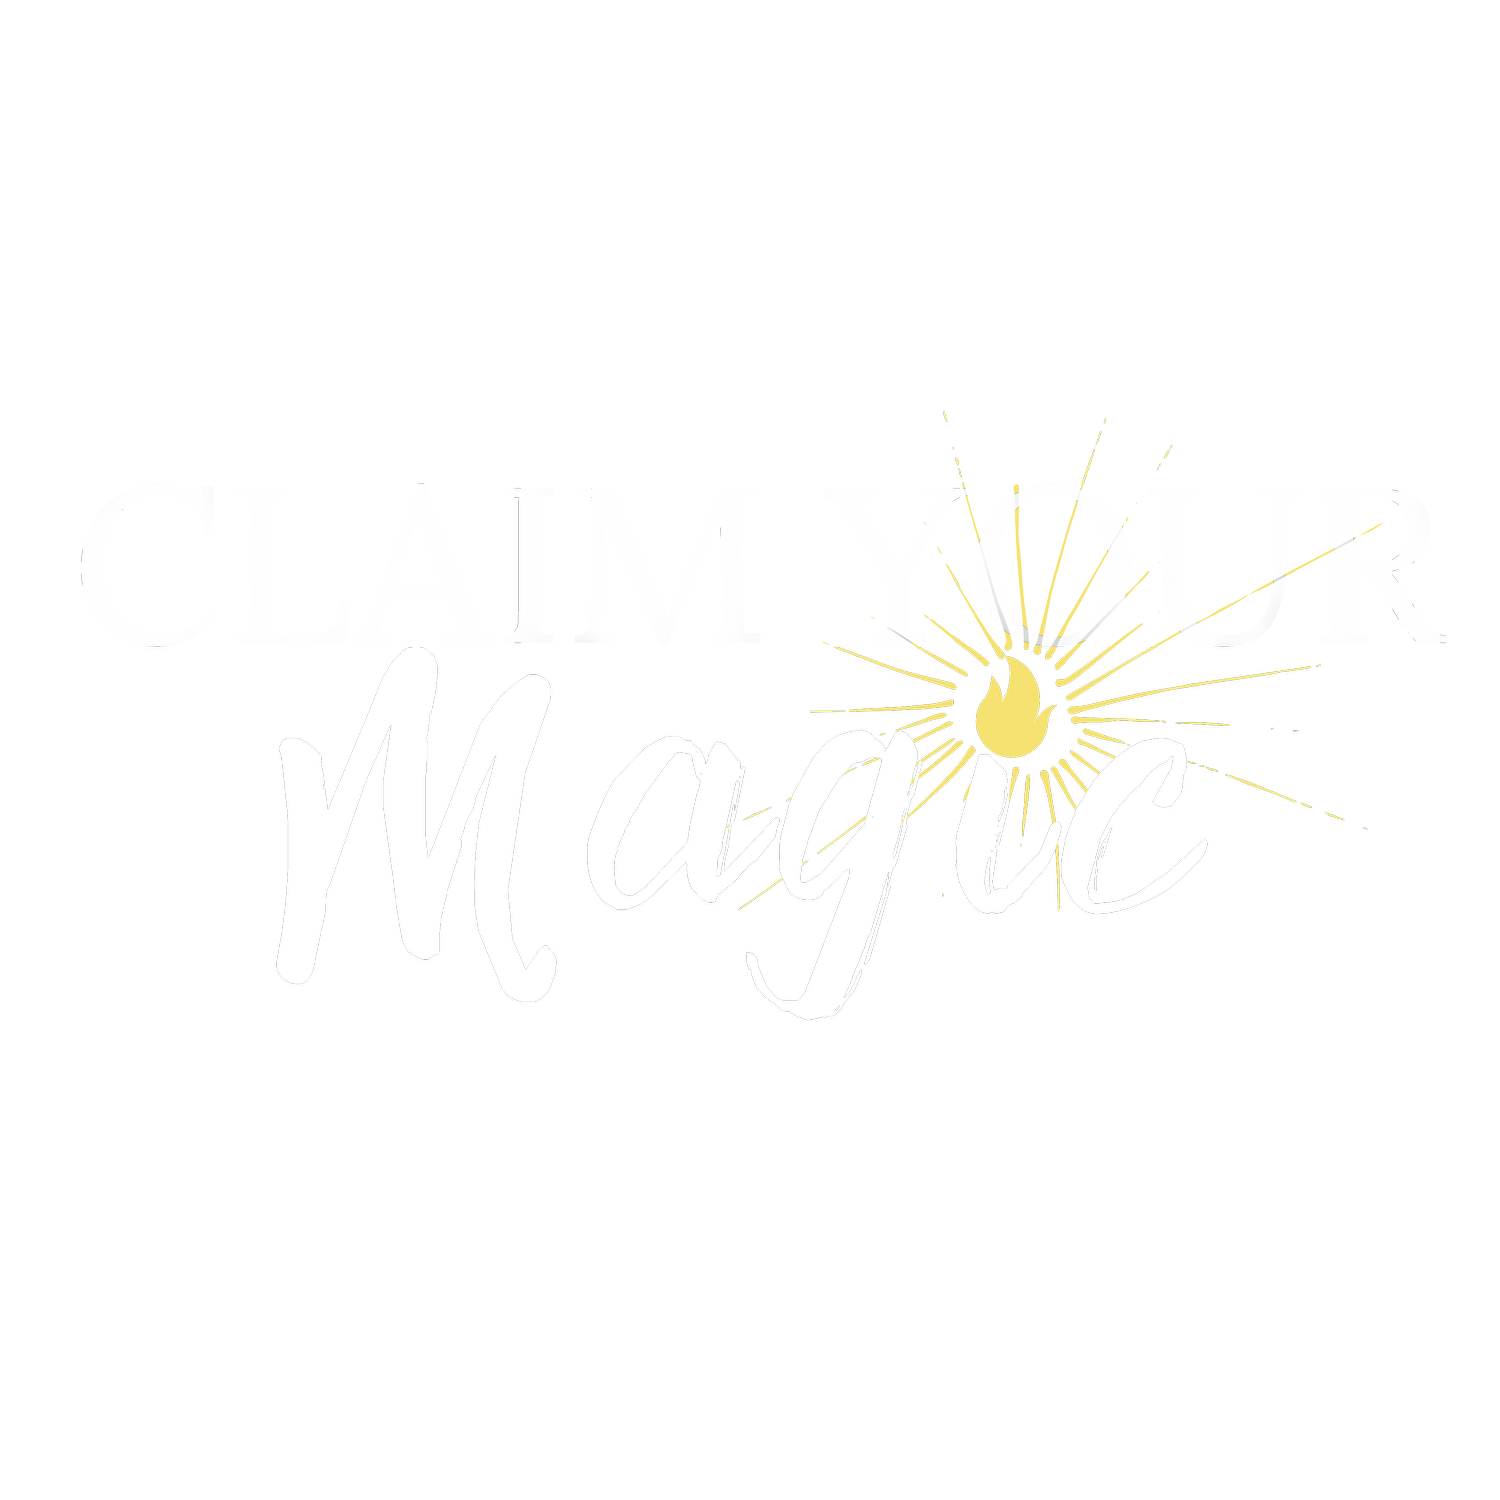 Claim Your Magic